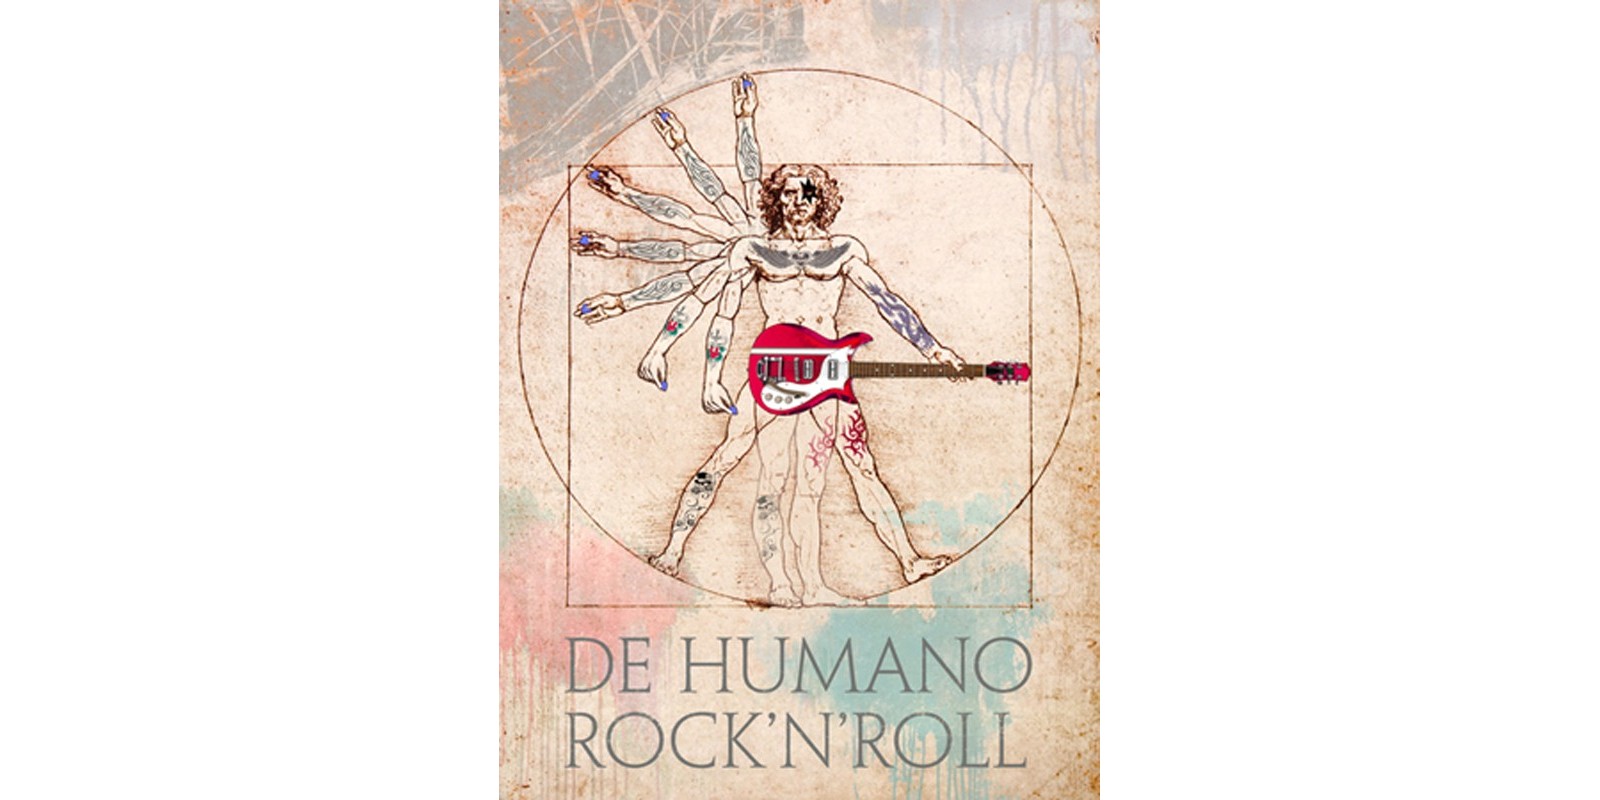 Steven Hill - De Humano Rock'n'roll